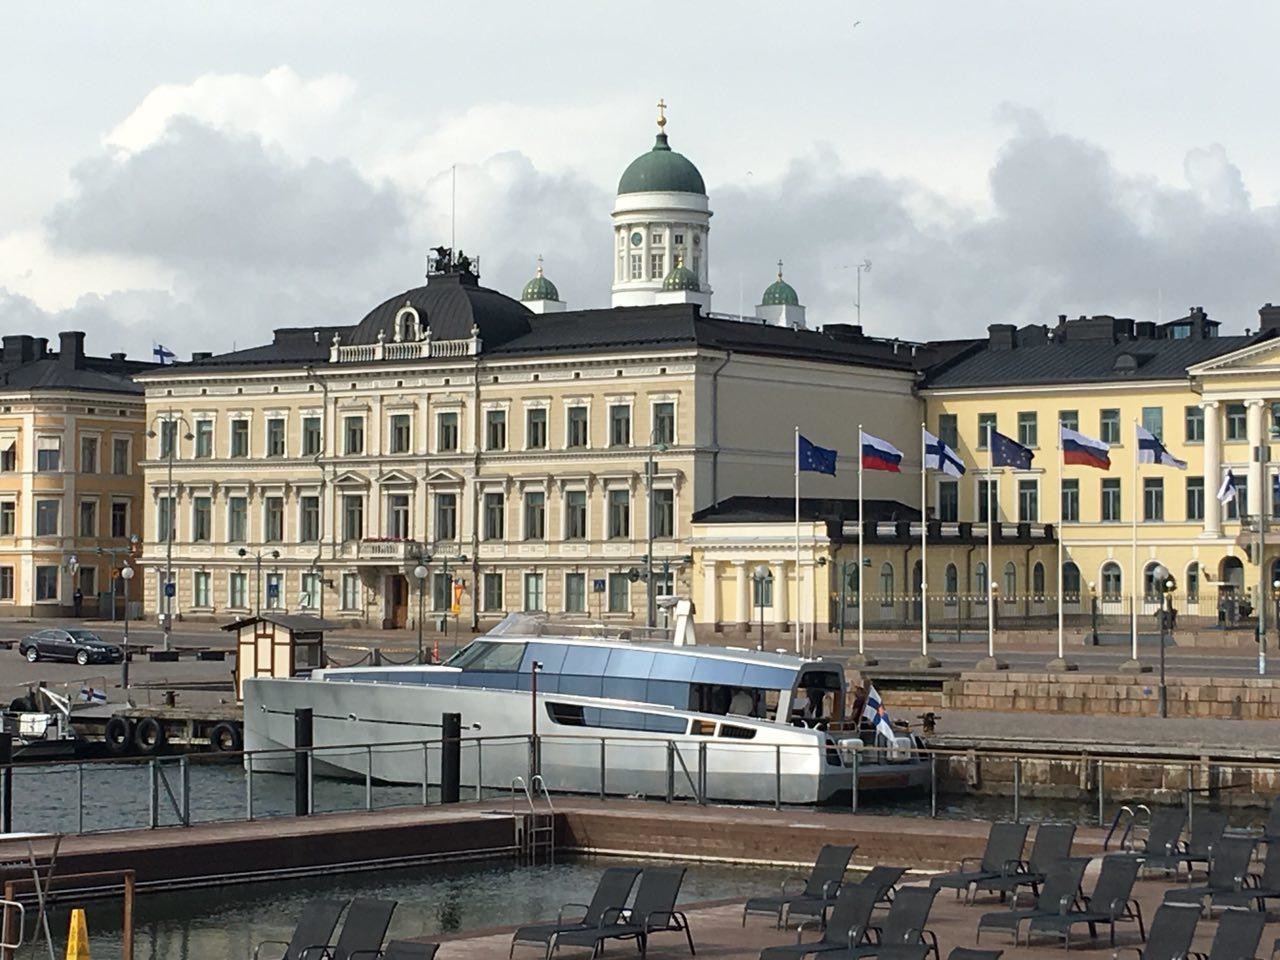 Яхта, на которой президенты отправятся в Свеаборг. Фото © L!FE